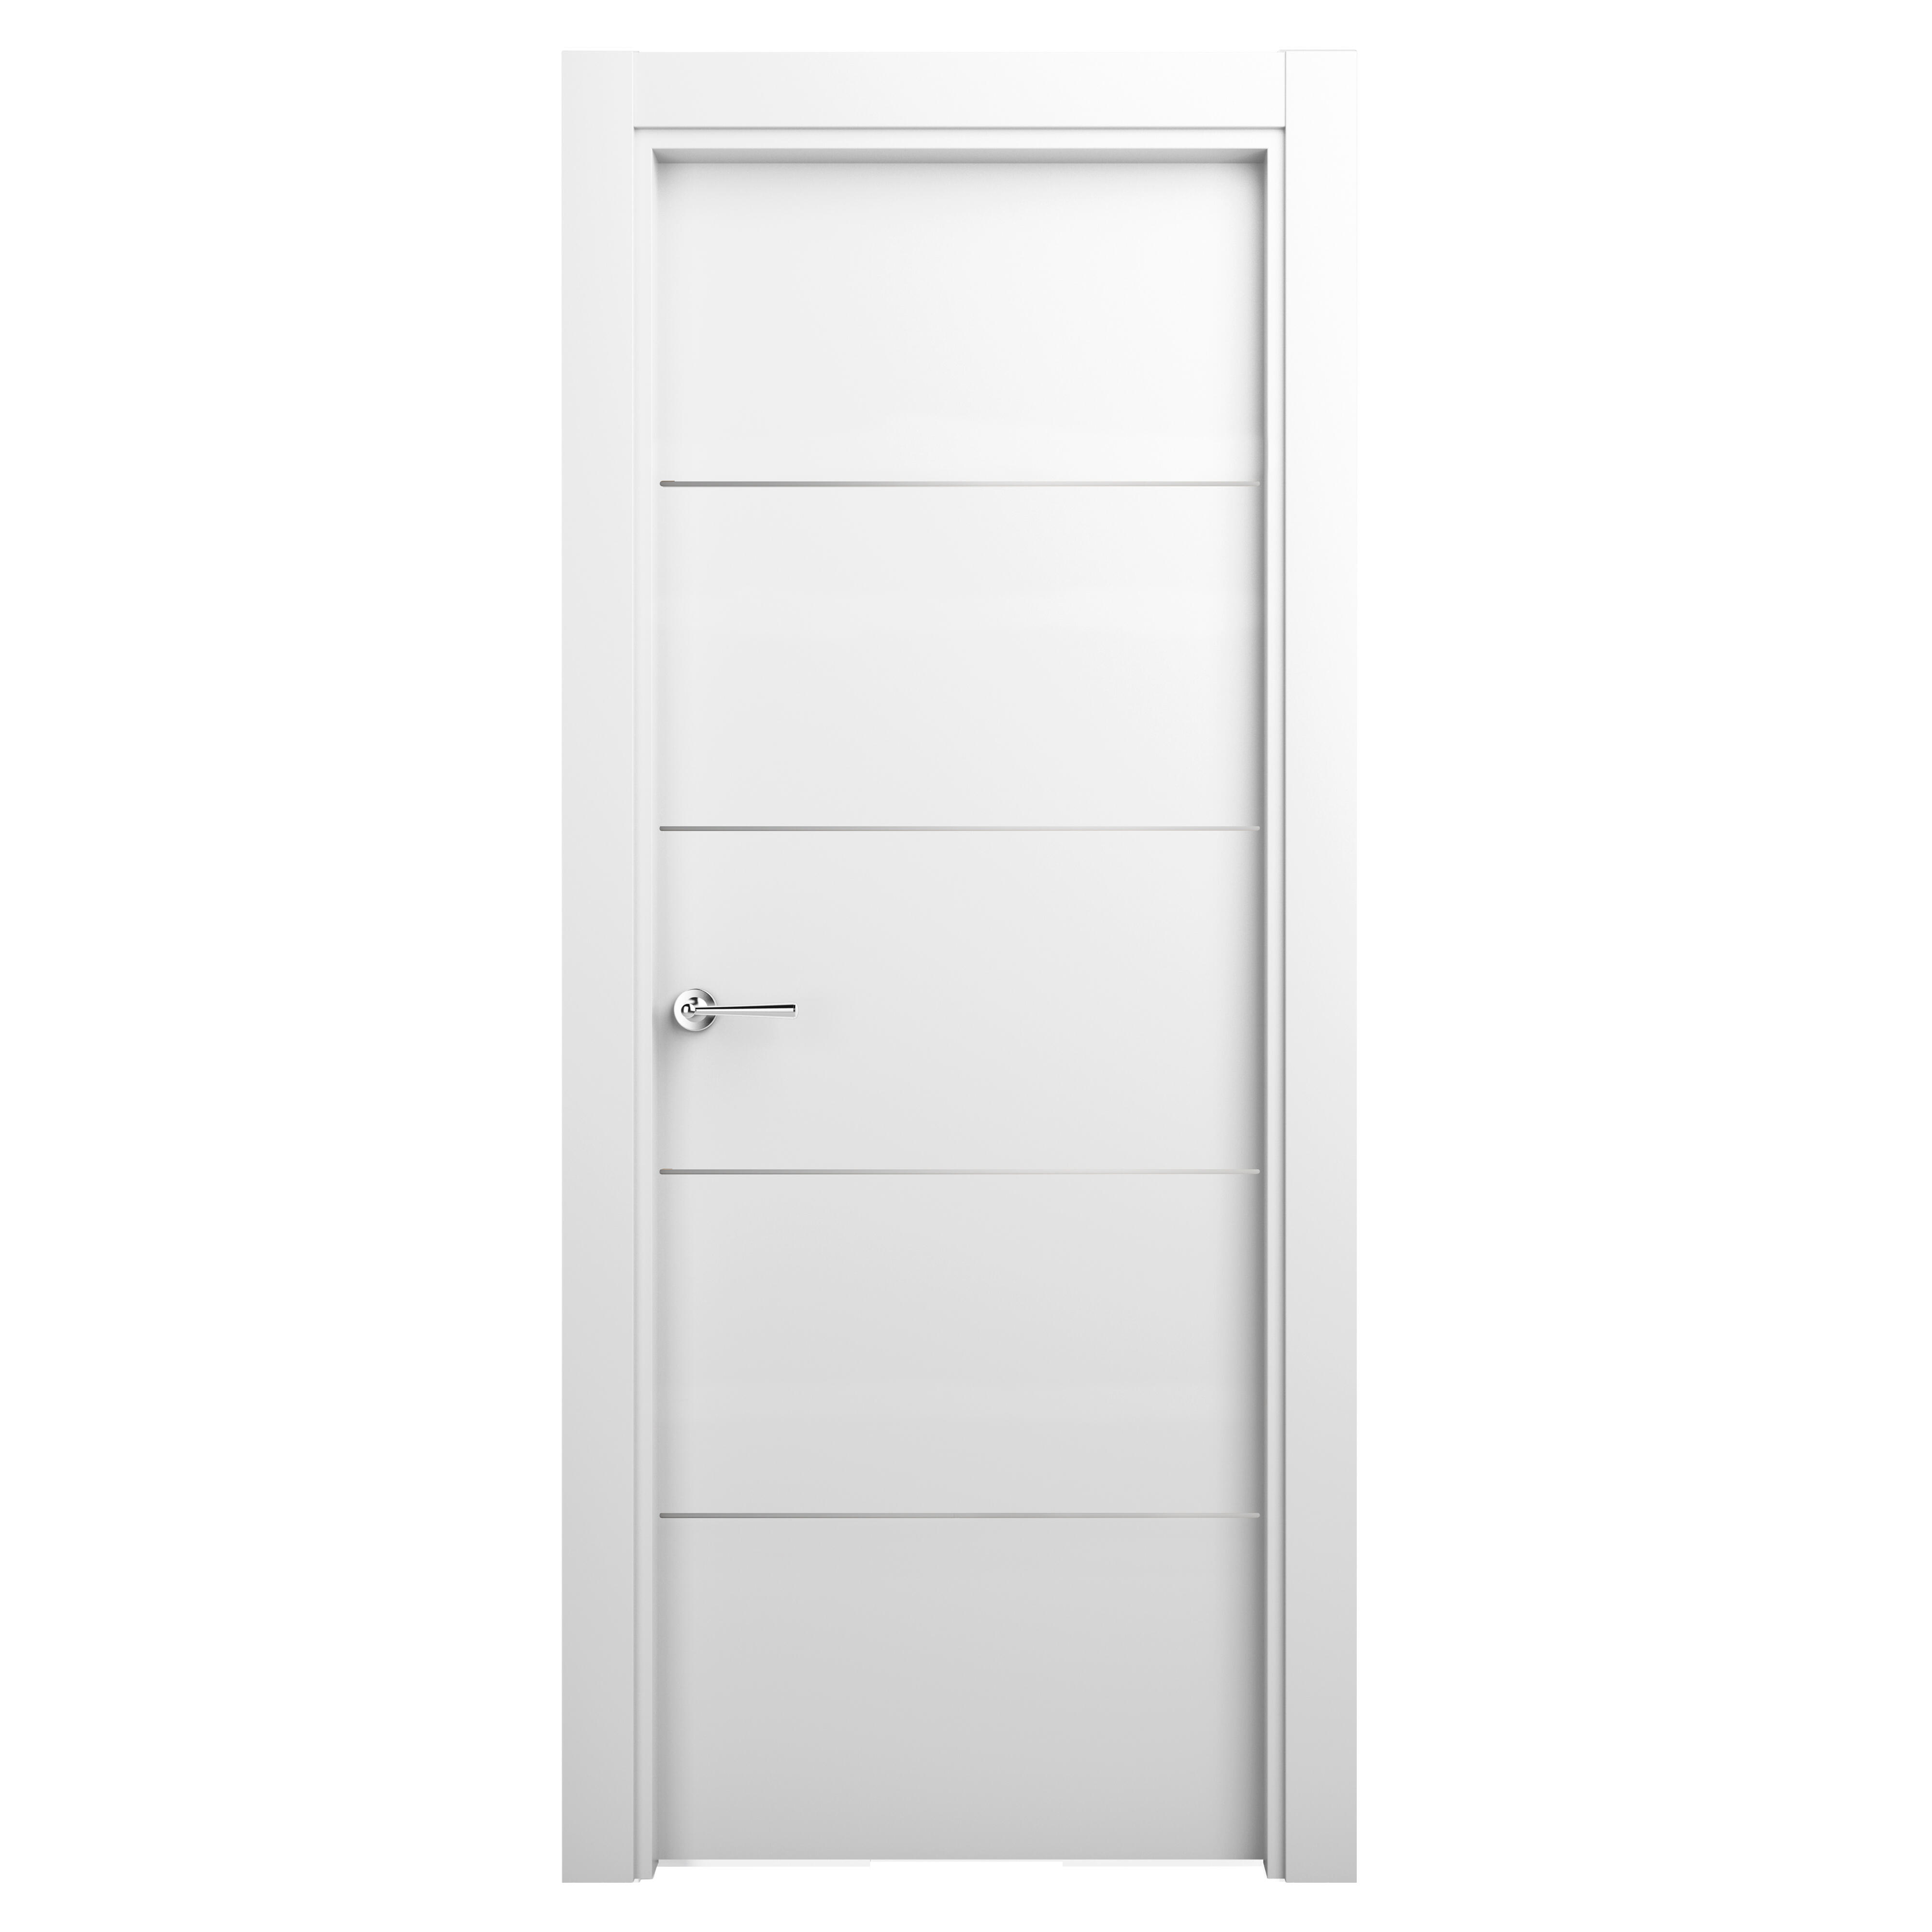 Puerta abatible paris blanca premium apertura izquierda de 9x82.5 cm